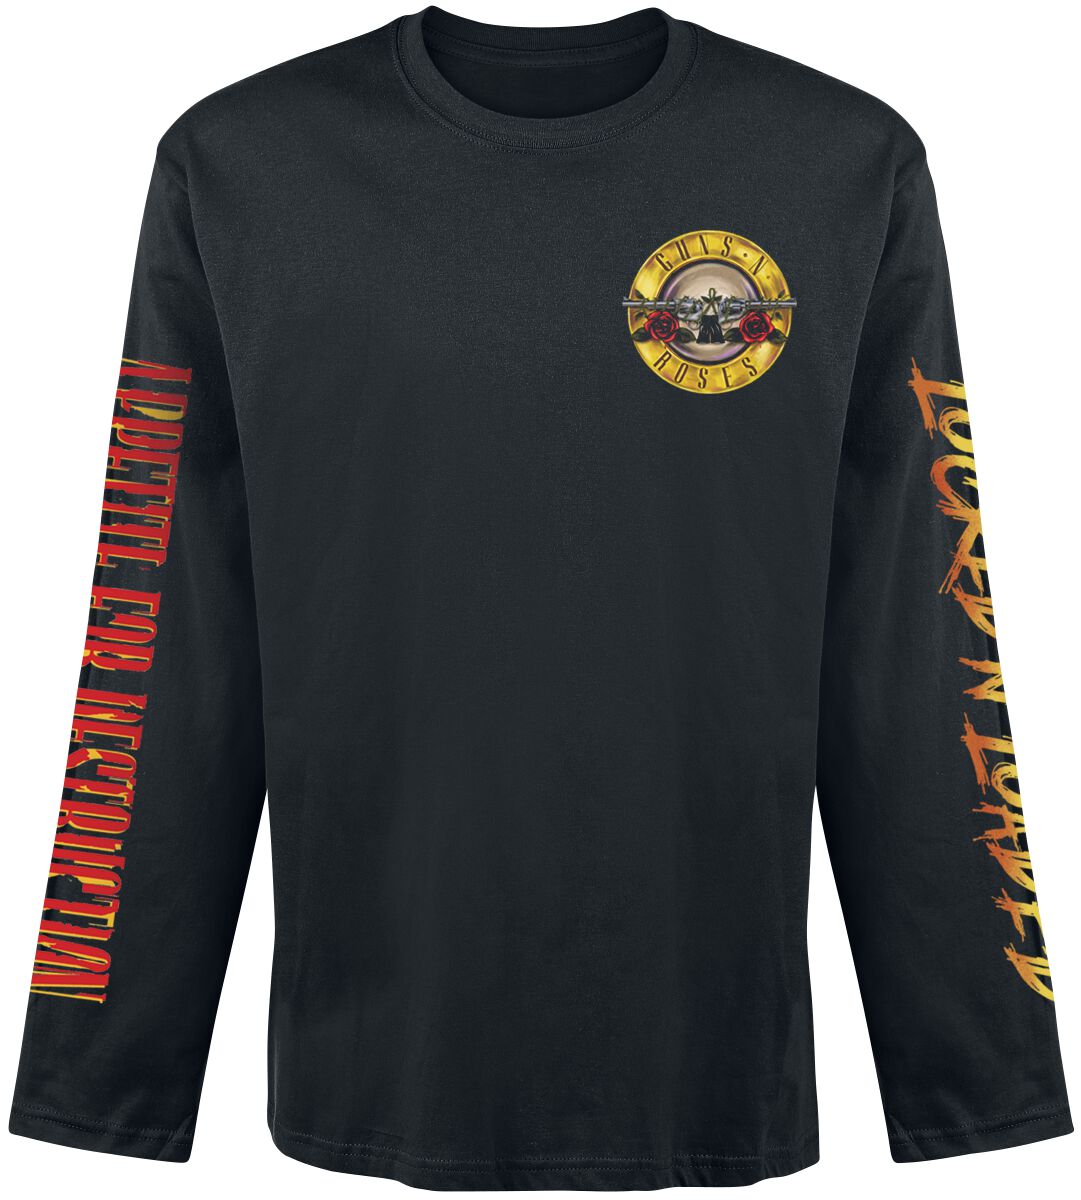 Guns N` Roses Langarmshirt - Locked N` Loaded - S bis XXL - für Männer - Größe S - schwarz  - Lizenziertes Merchandise!